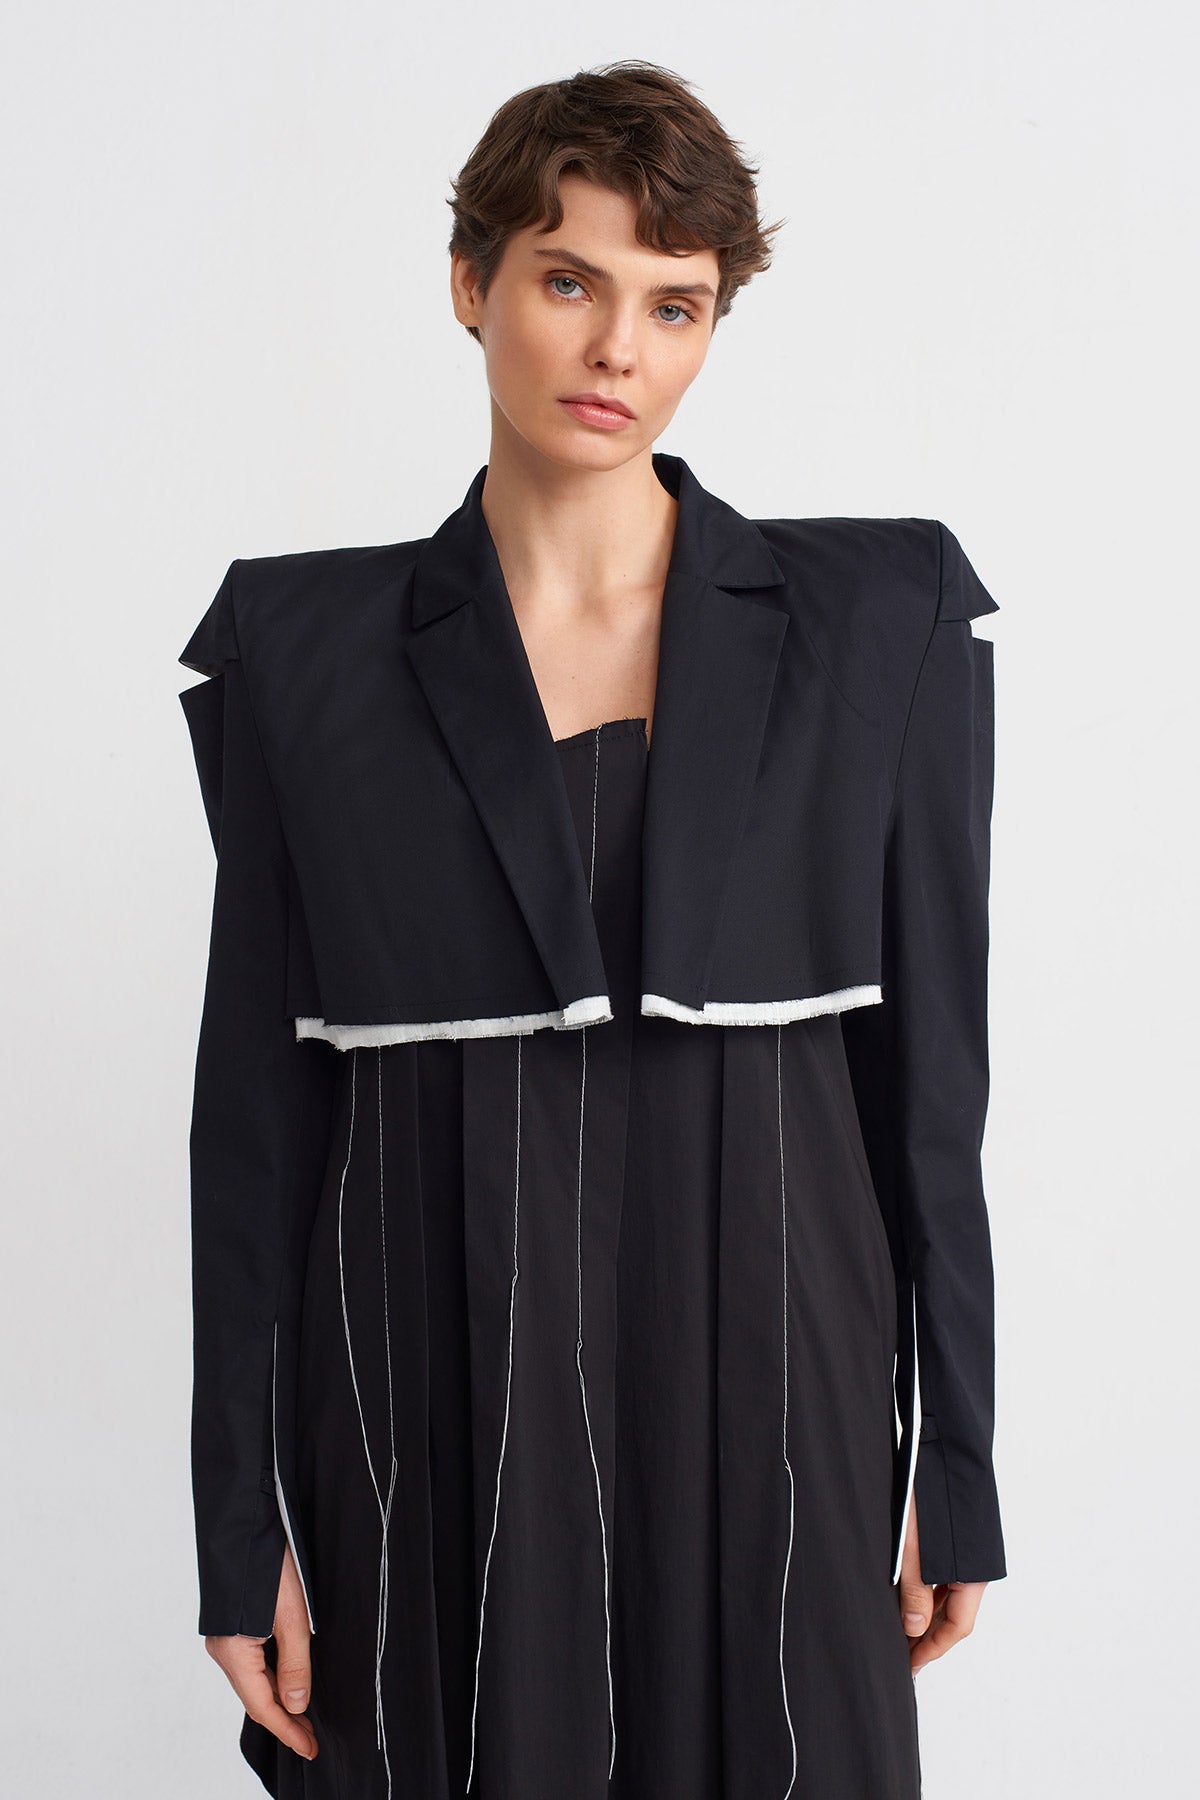 Black / White Padded Short Blazer Jacket-Y245015026